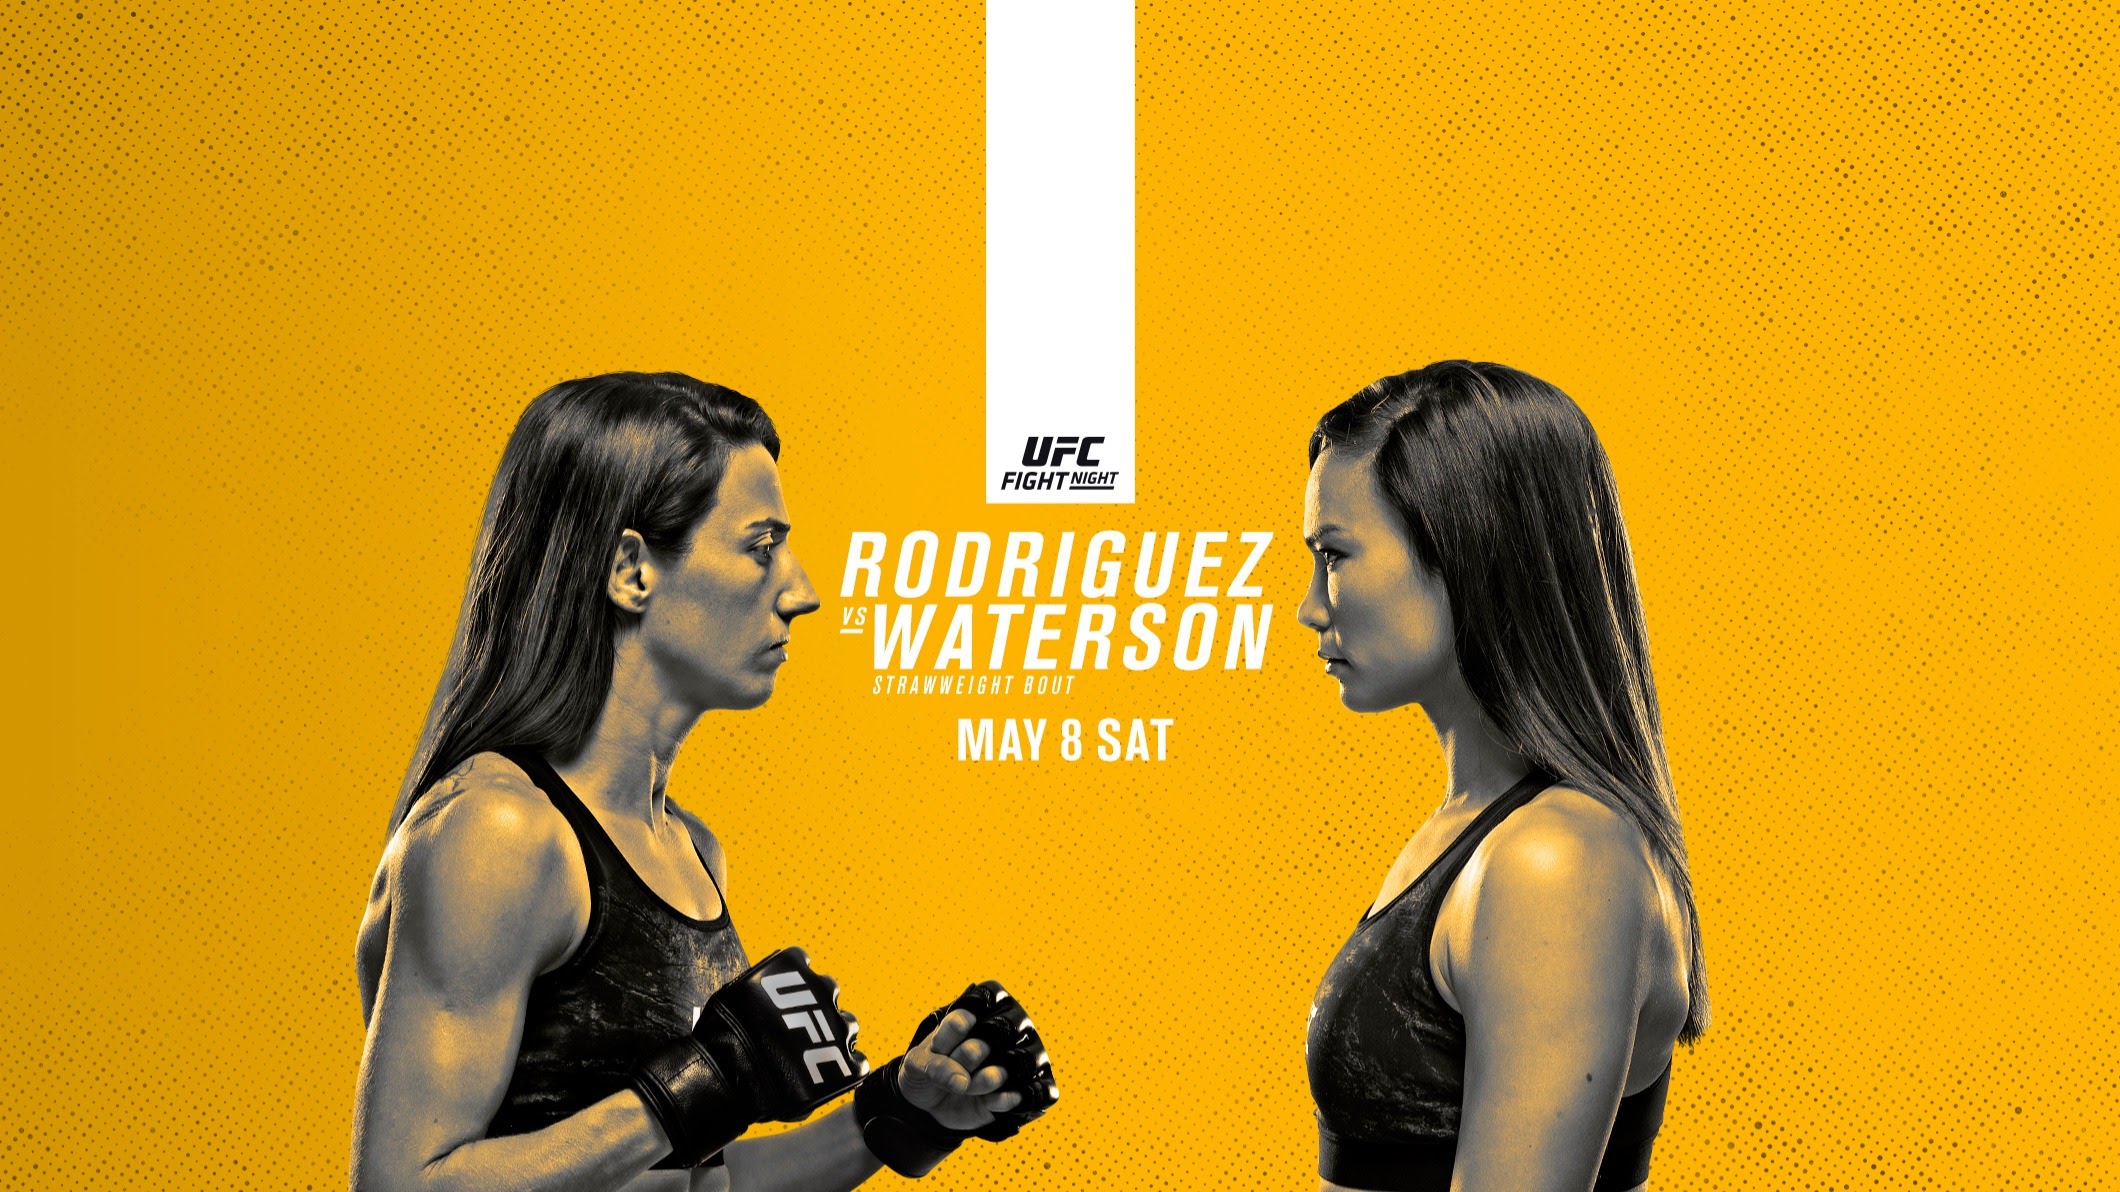 UFC on ESPN 24 - Las Vegas - Poster et affiche